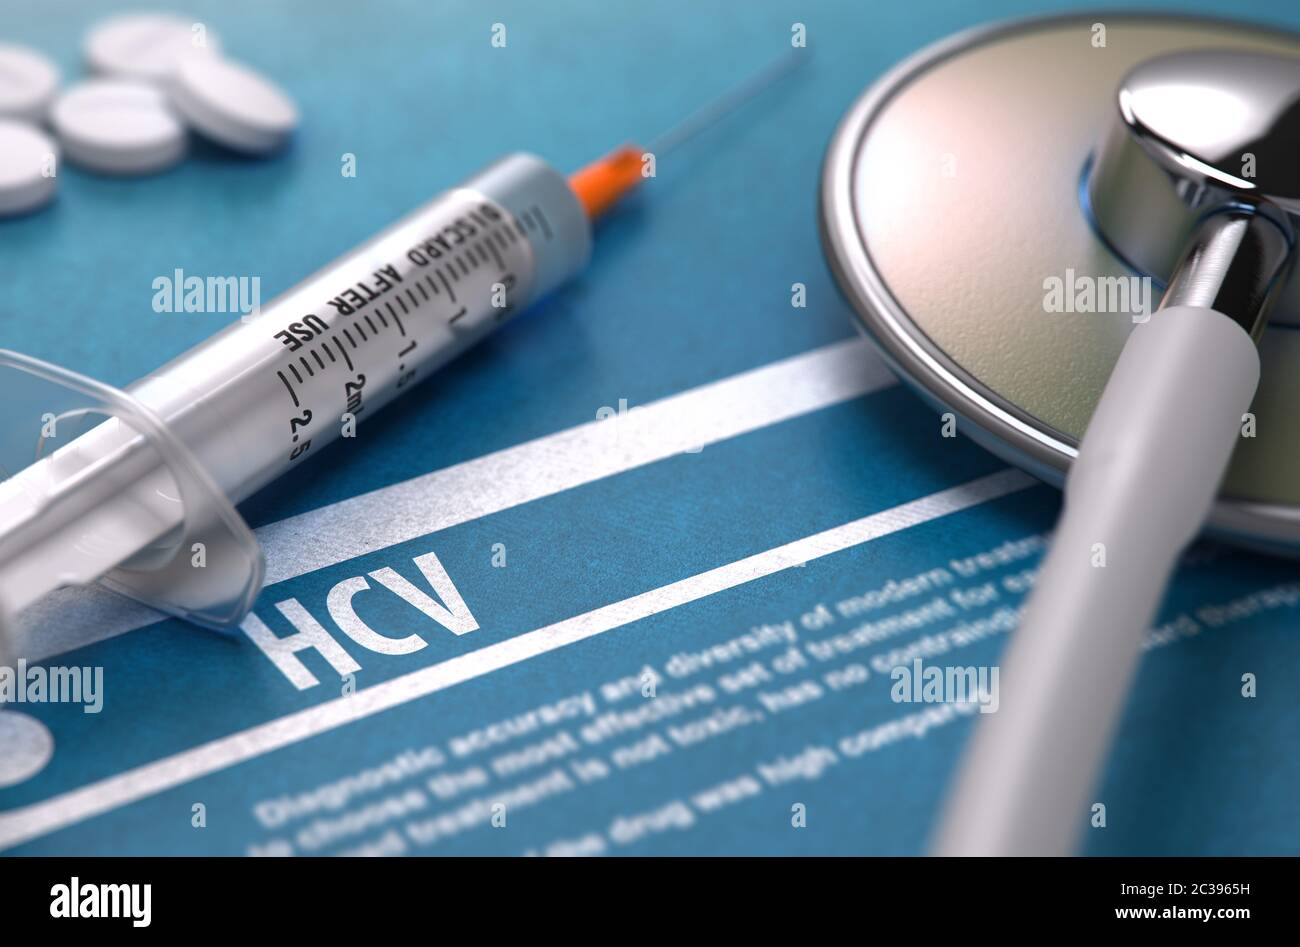 Diagnosi - HCV - virus dell'epatite C. Concetto medico su sfondo blu con testo sfocato e composizione di pillole, siringa e stetoscopio. Selettivo Foto Stock